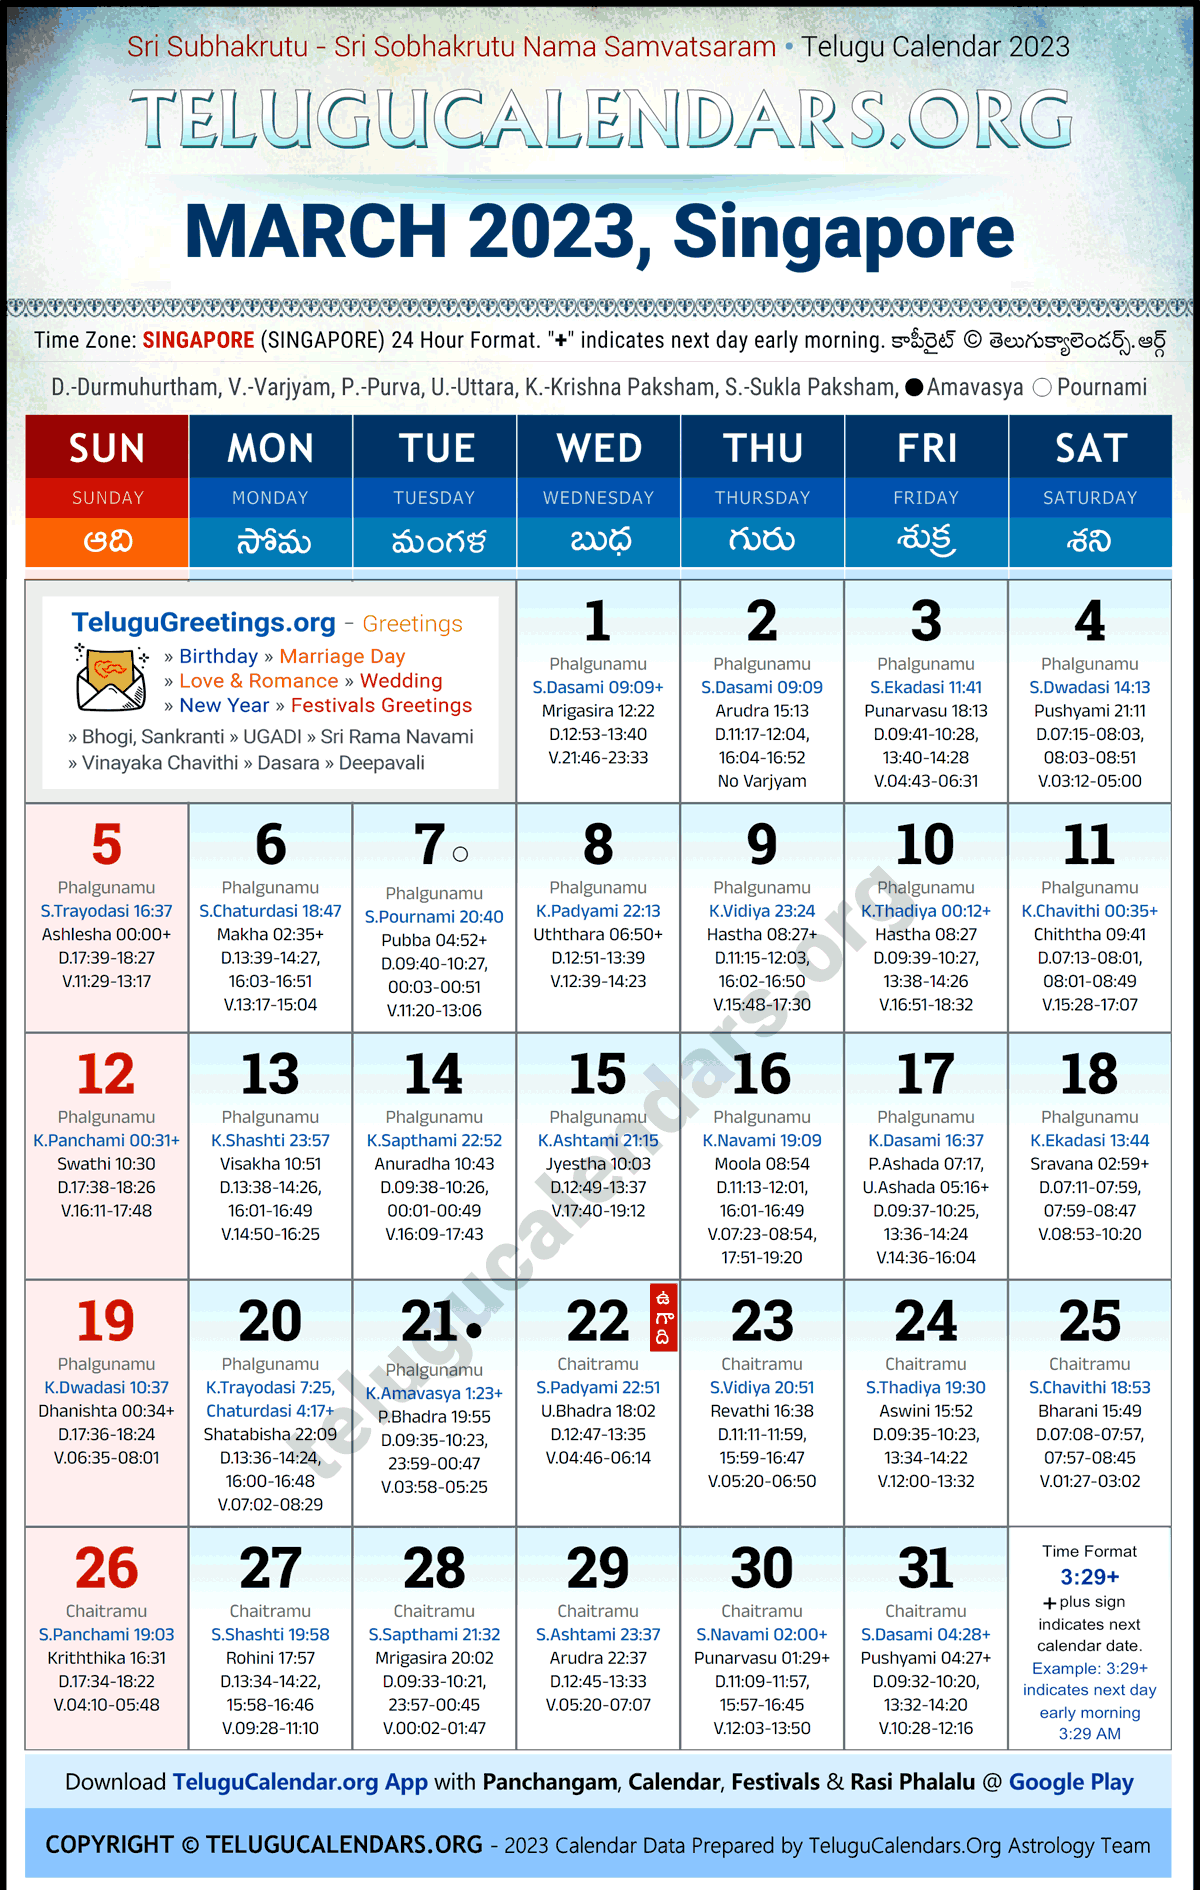 Telugu Calendar 2023 March Festivals for Singapore